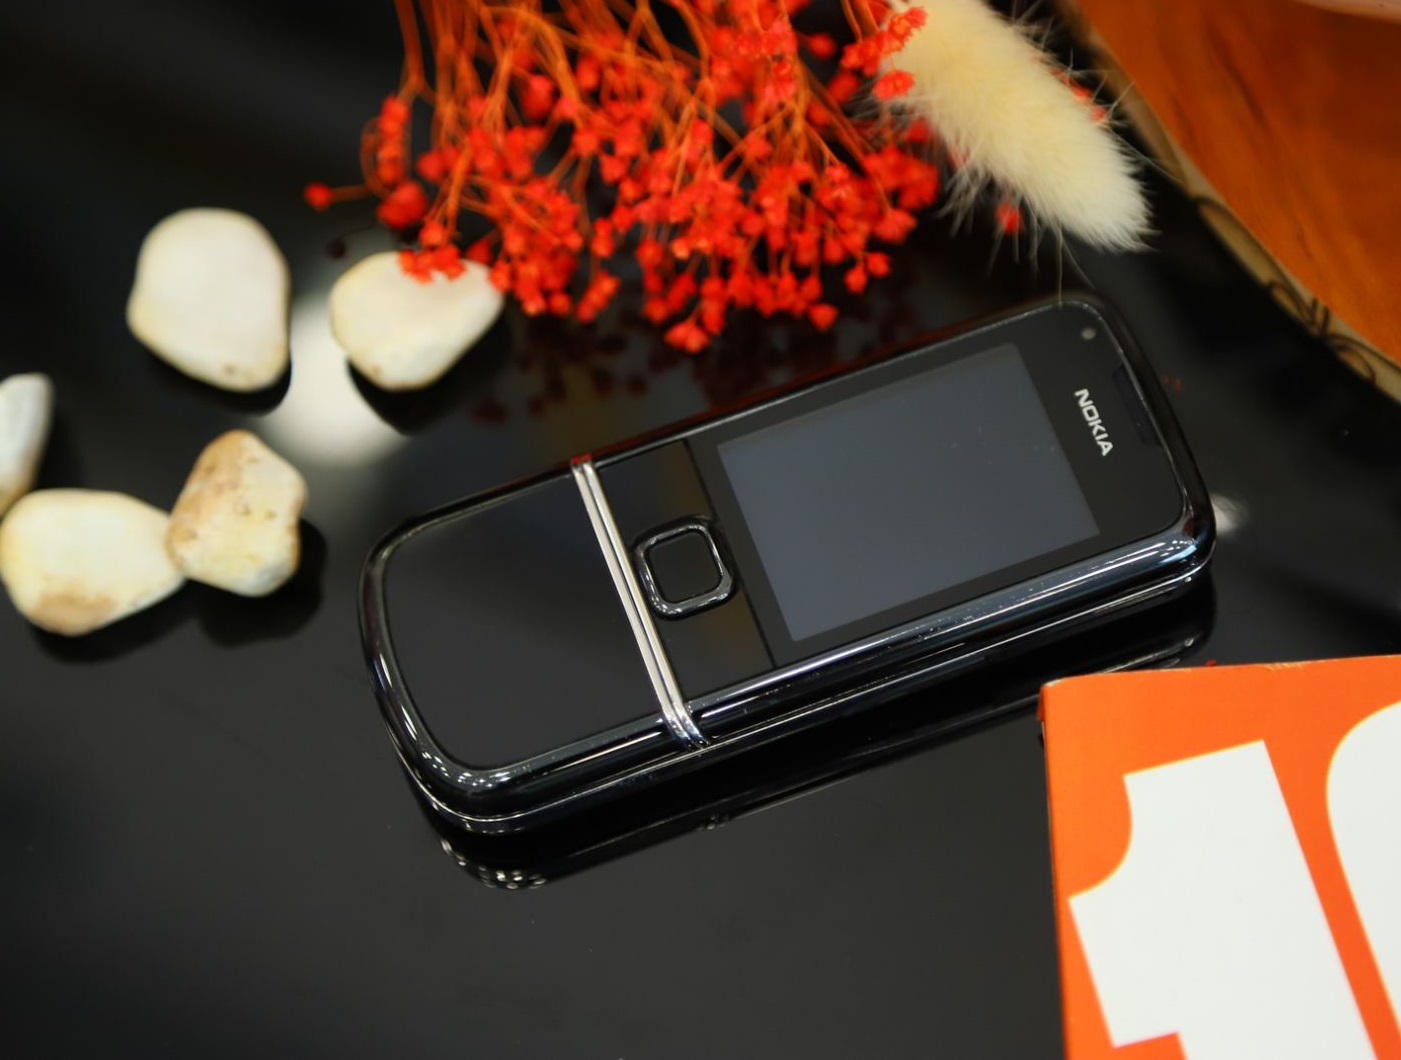 Điện thoại Nokia 8800e Sapphire Arte Black là một sản phẩm tuyệt vời cho những ai yêu thích sự sang trọng và đẳng cấp. Với thiết kế đẹp mắt cùng vỏ được làm bằng sapphire, điện thoại này thực sự là một tác phẩm nghệ thuật. Hãy xem hình ảnh để trải nghiệm sự hoàn hảo của chiếc điện thoại này.